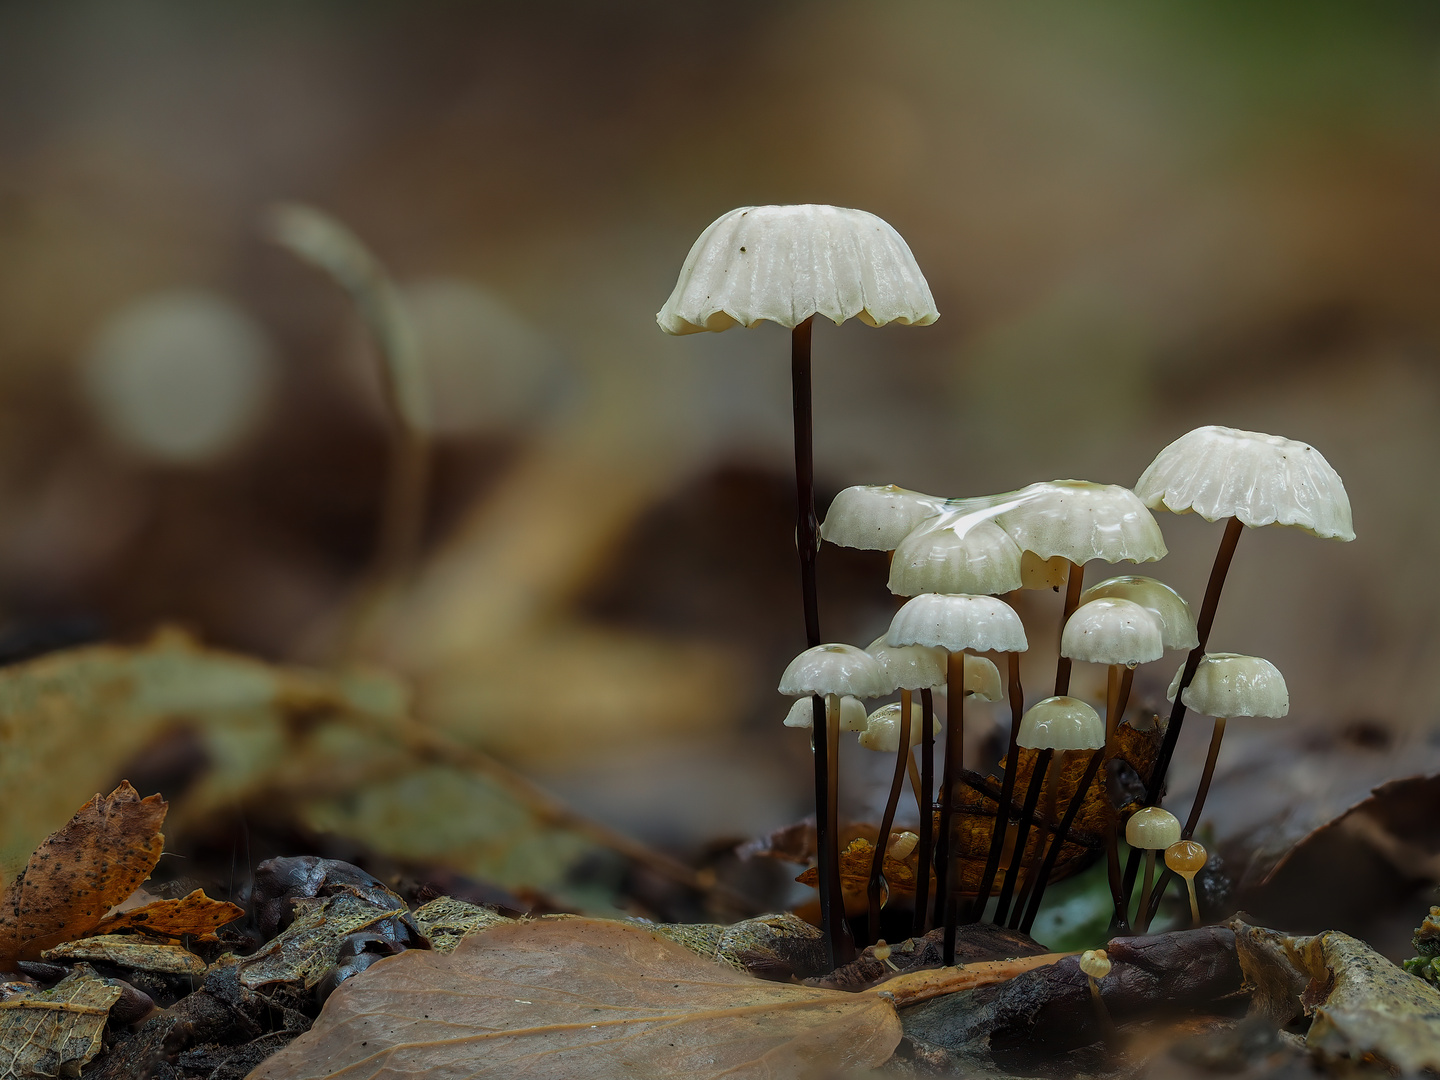 Mini Pilze nach dem Regen 